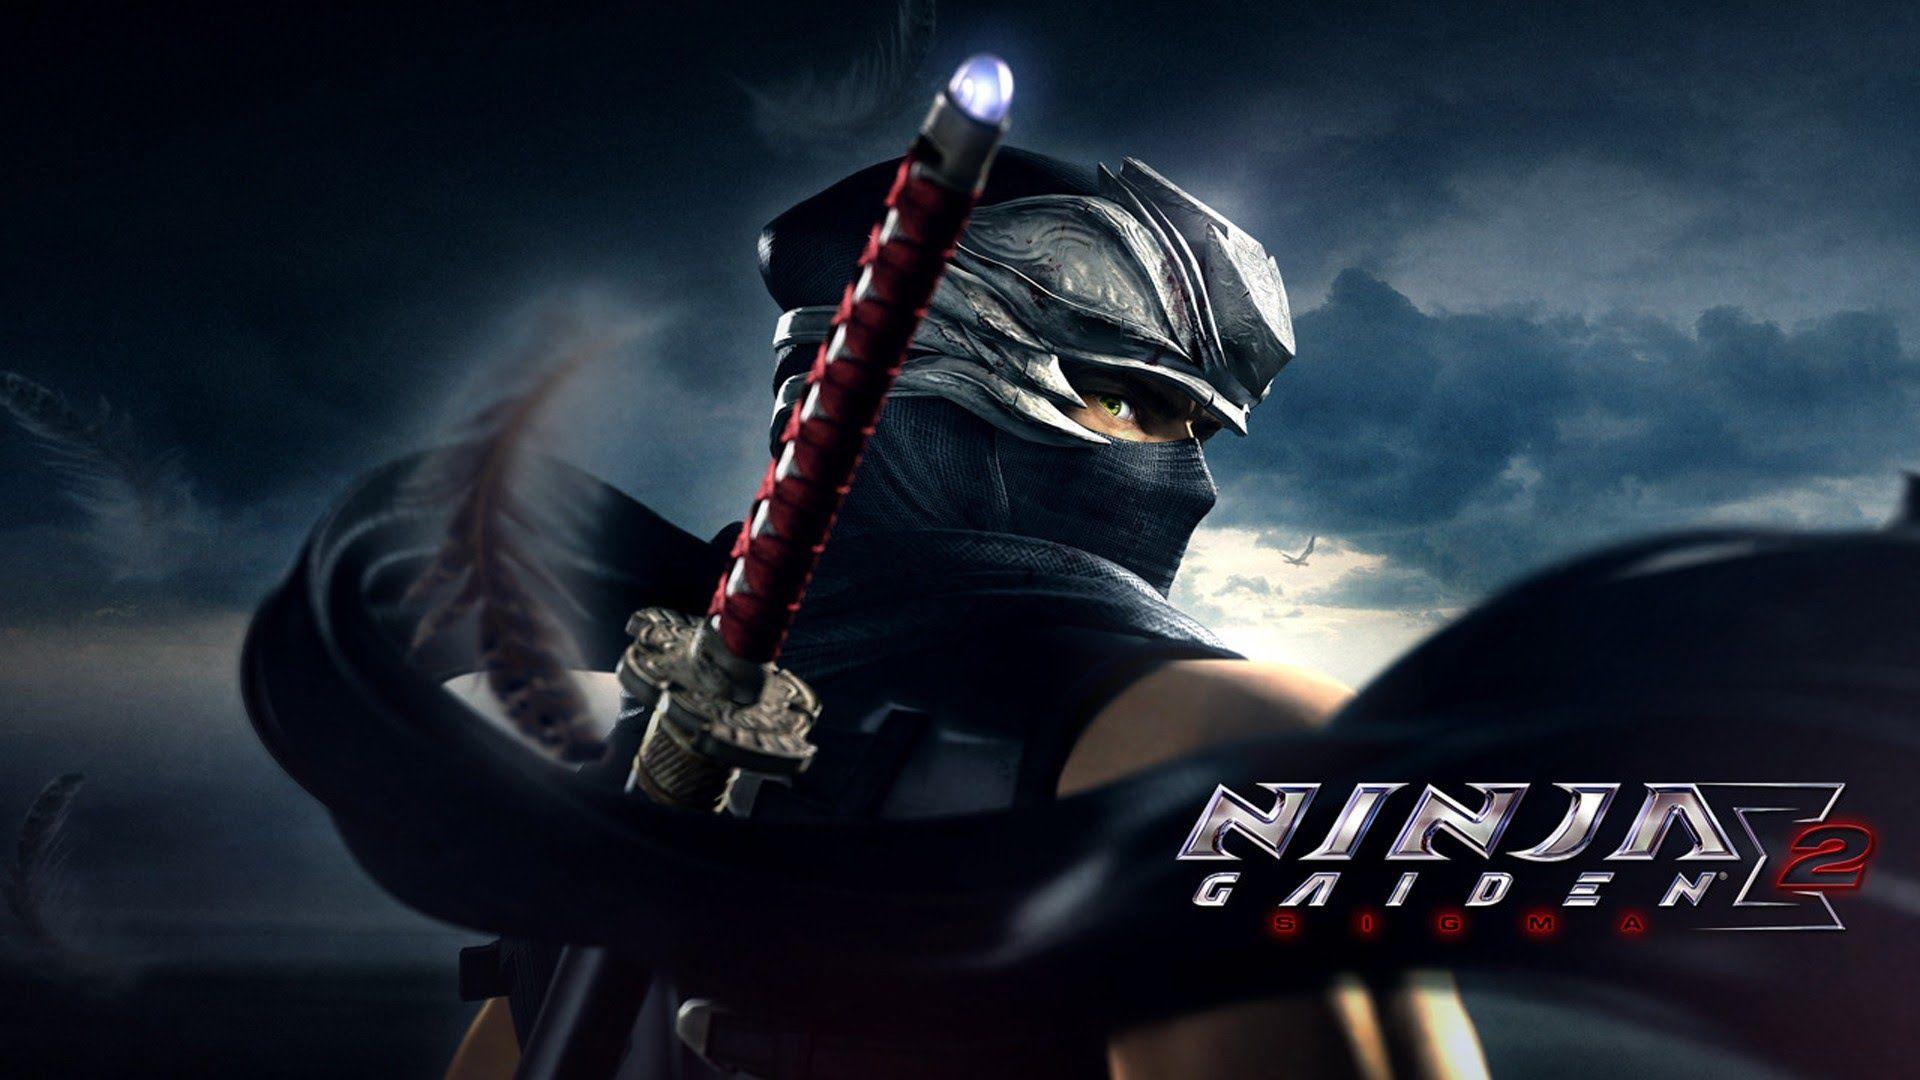 Ninja Gaiden Sigma 2 (PS3) All CutScenes [1080p] (JAP DUB)